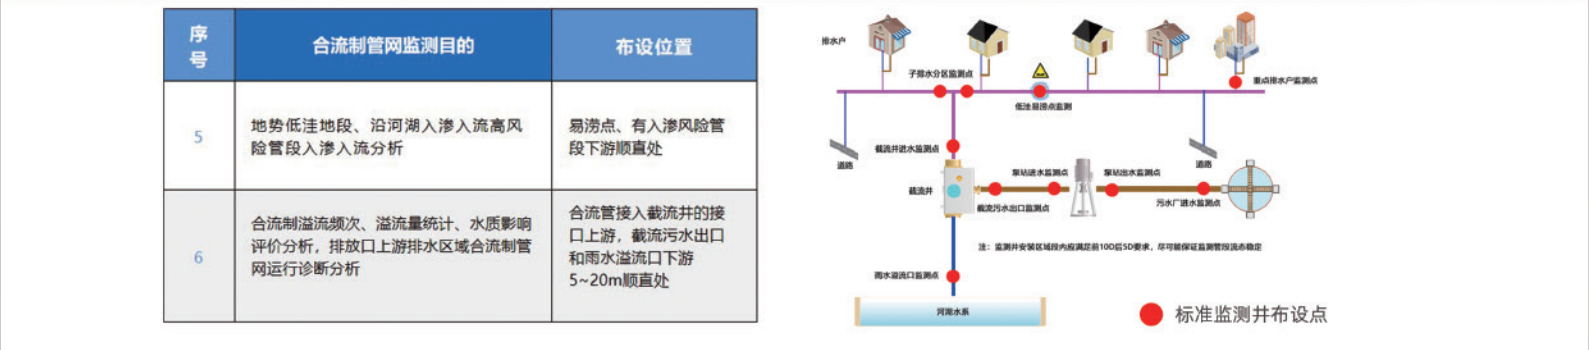 城镇排水系统标准监测井和排水管网监测管理系统解决方案